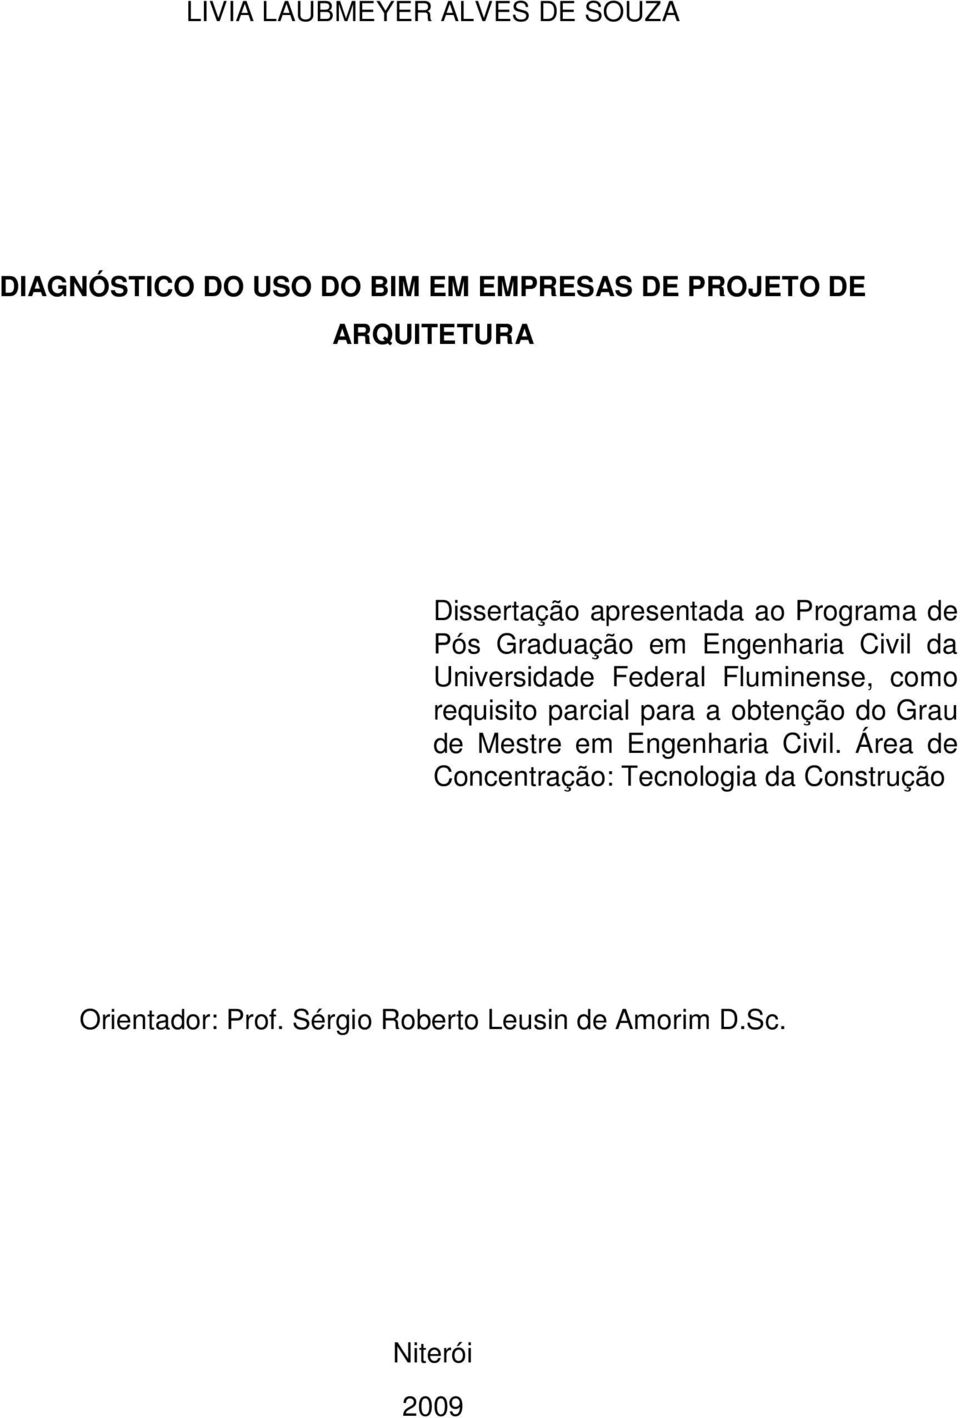 Fluminense, como requisito parcial para a obtenção do Grau de Mestre em Engenharia Civil.